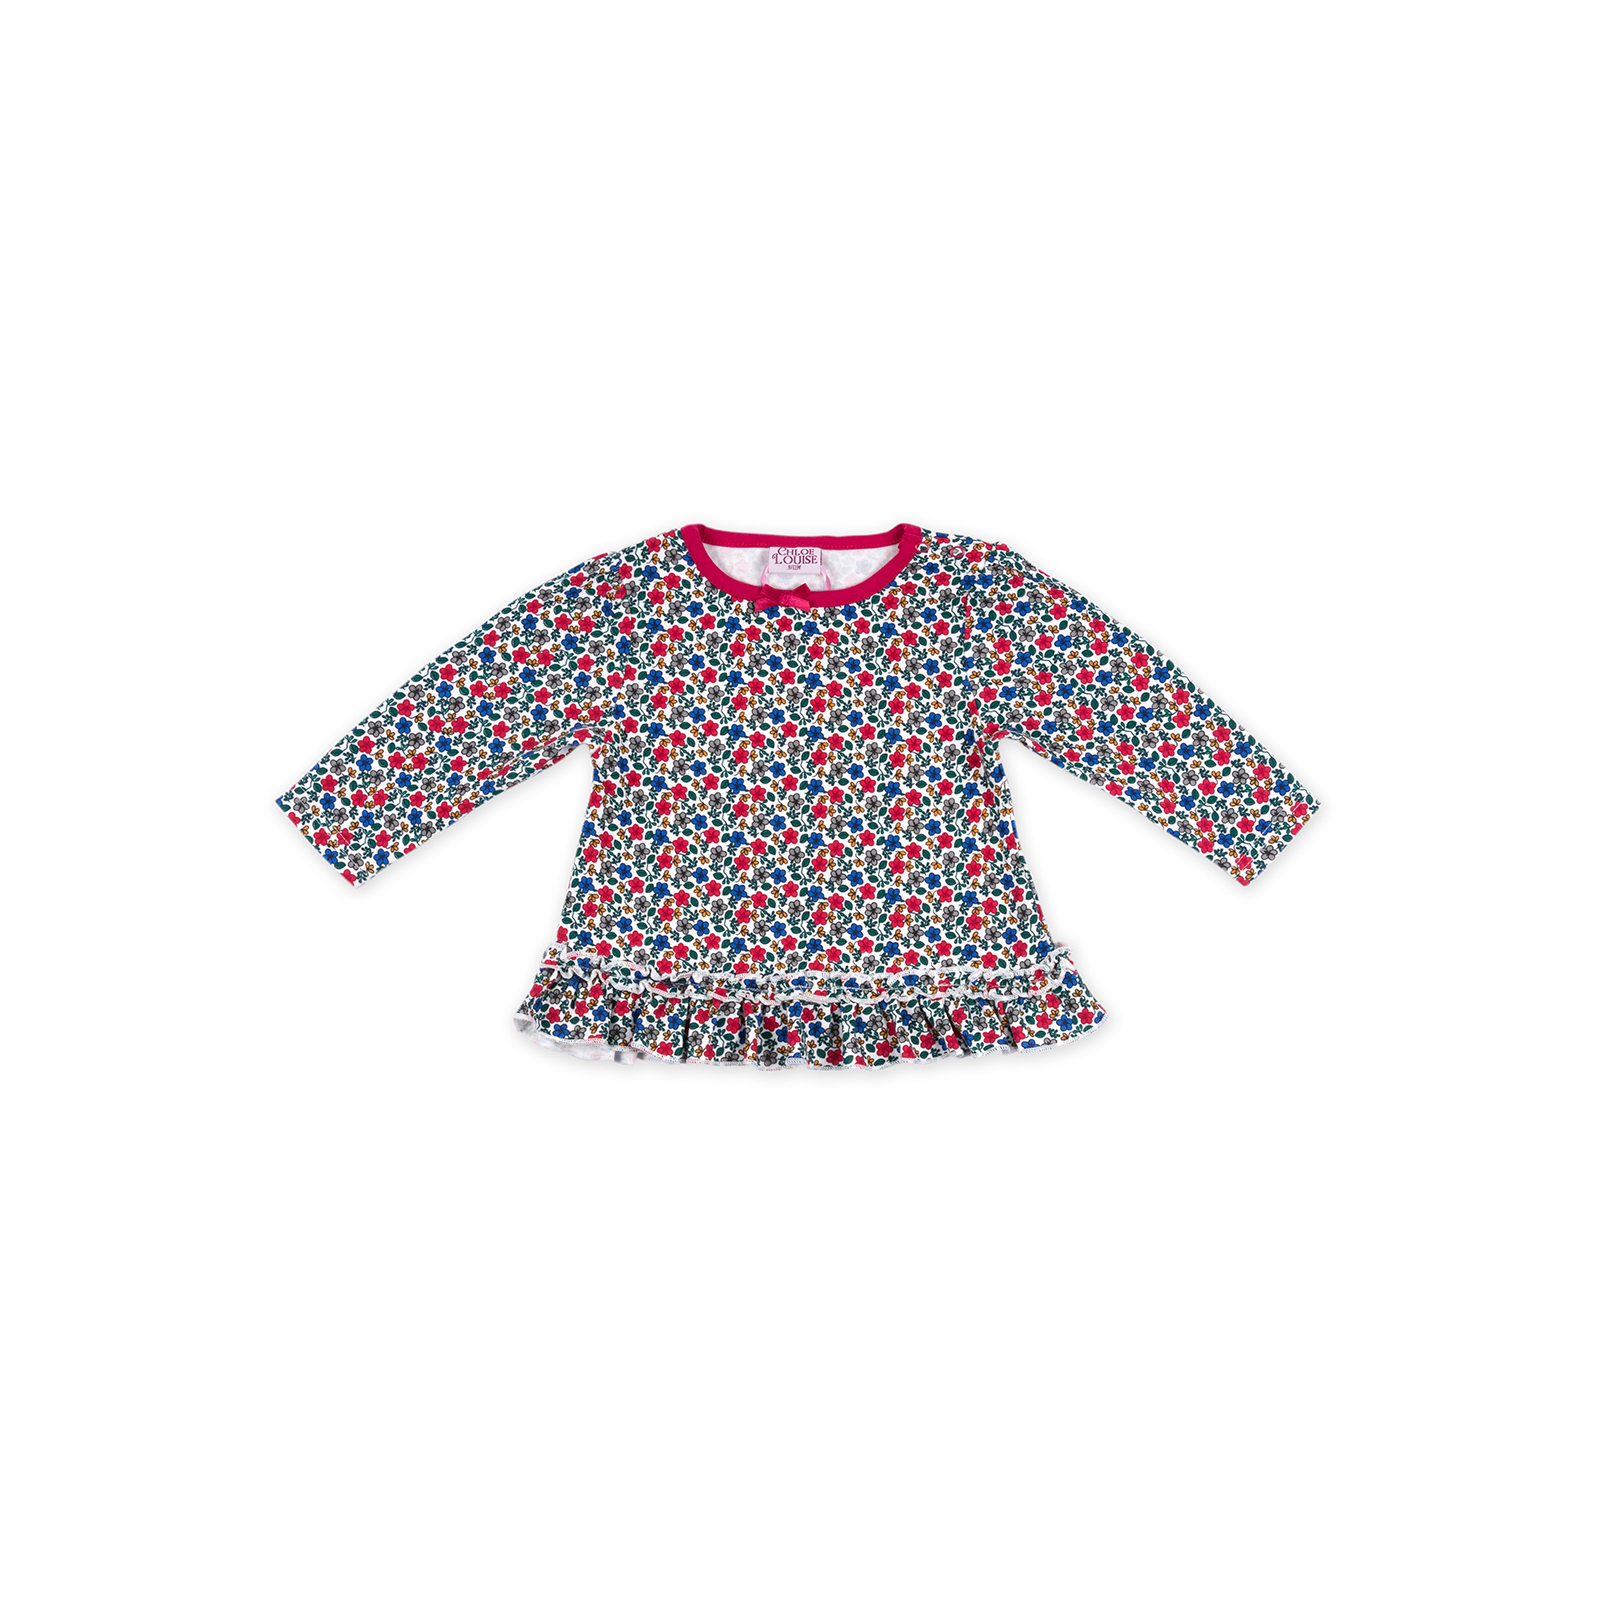 Набор детской одежды Luvena Fortuna для девочек: кофточка, штанишки и меховая жилетка (G8070.18-24) изображение 2